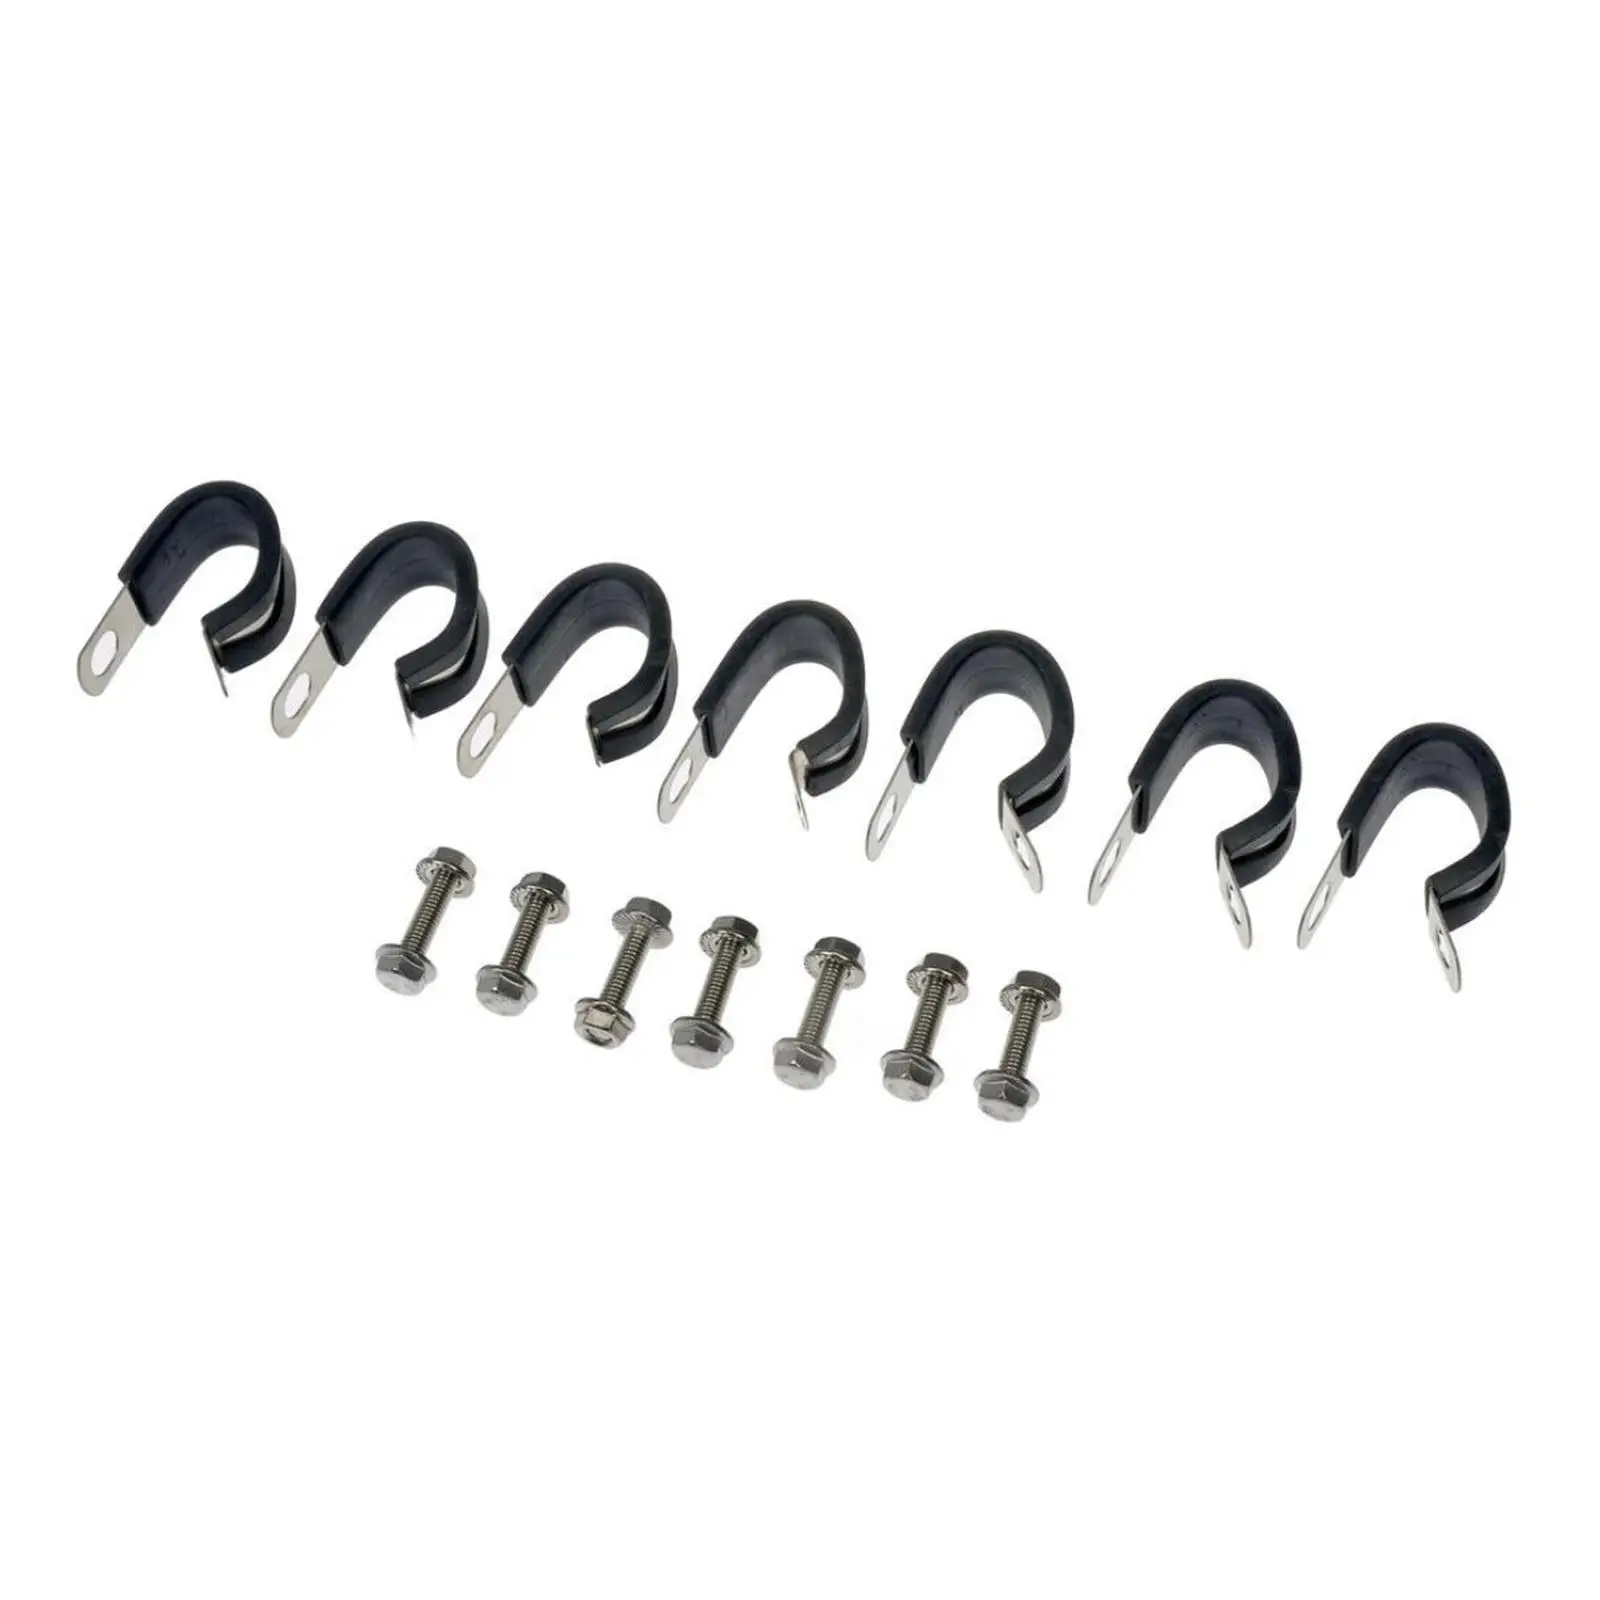 Fuel Line 819-840 Easy Installation Repair Parts Spare Parts Replaces Durable Accessories for Chevrolet Silverado 1500 2500